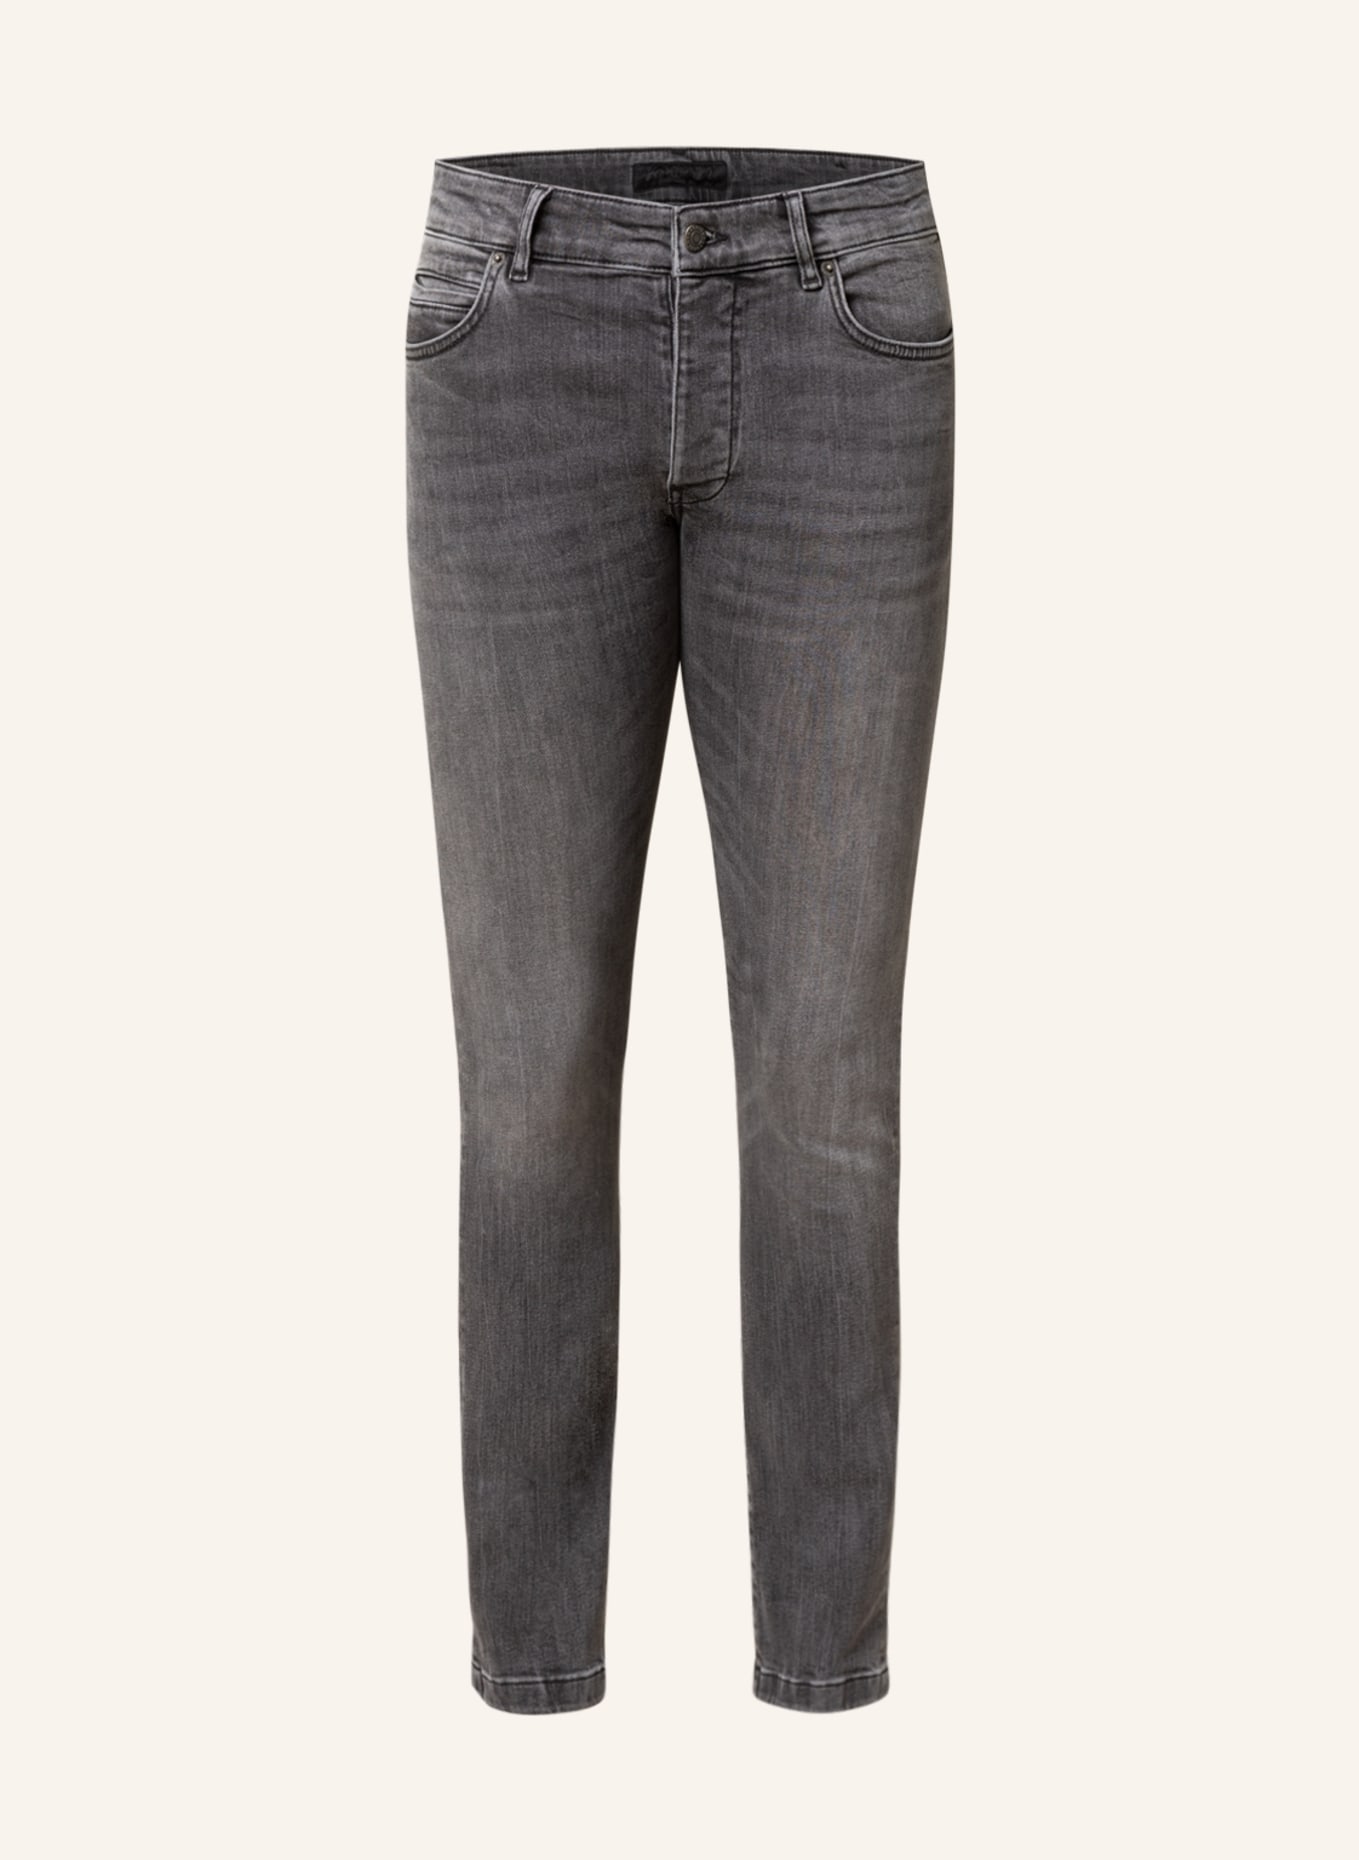 DRYKORN Jeans JAZ Slim Fit, Farbe: 6300 GRAU (Bild 1)